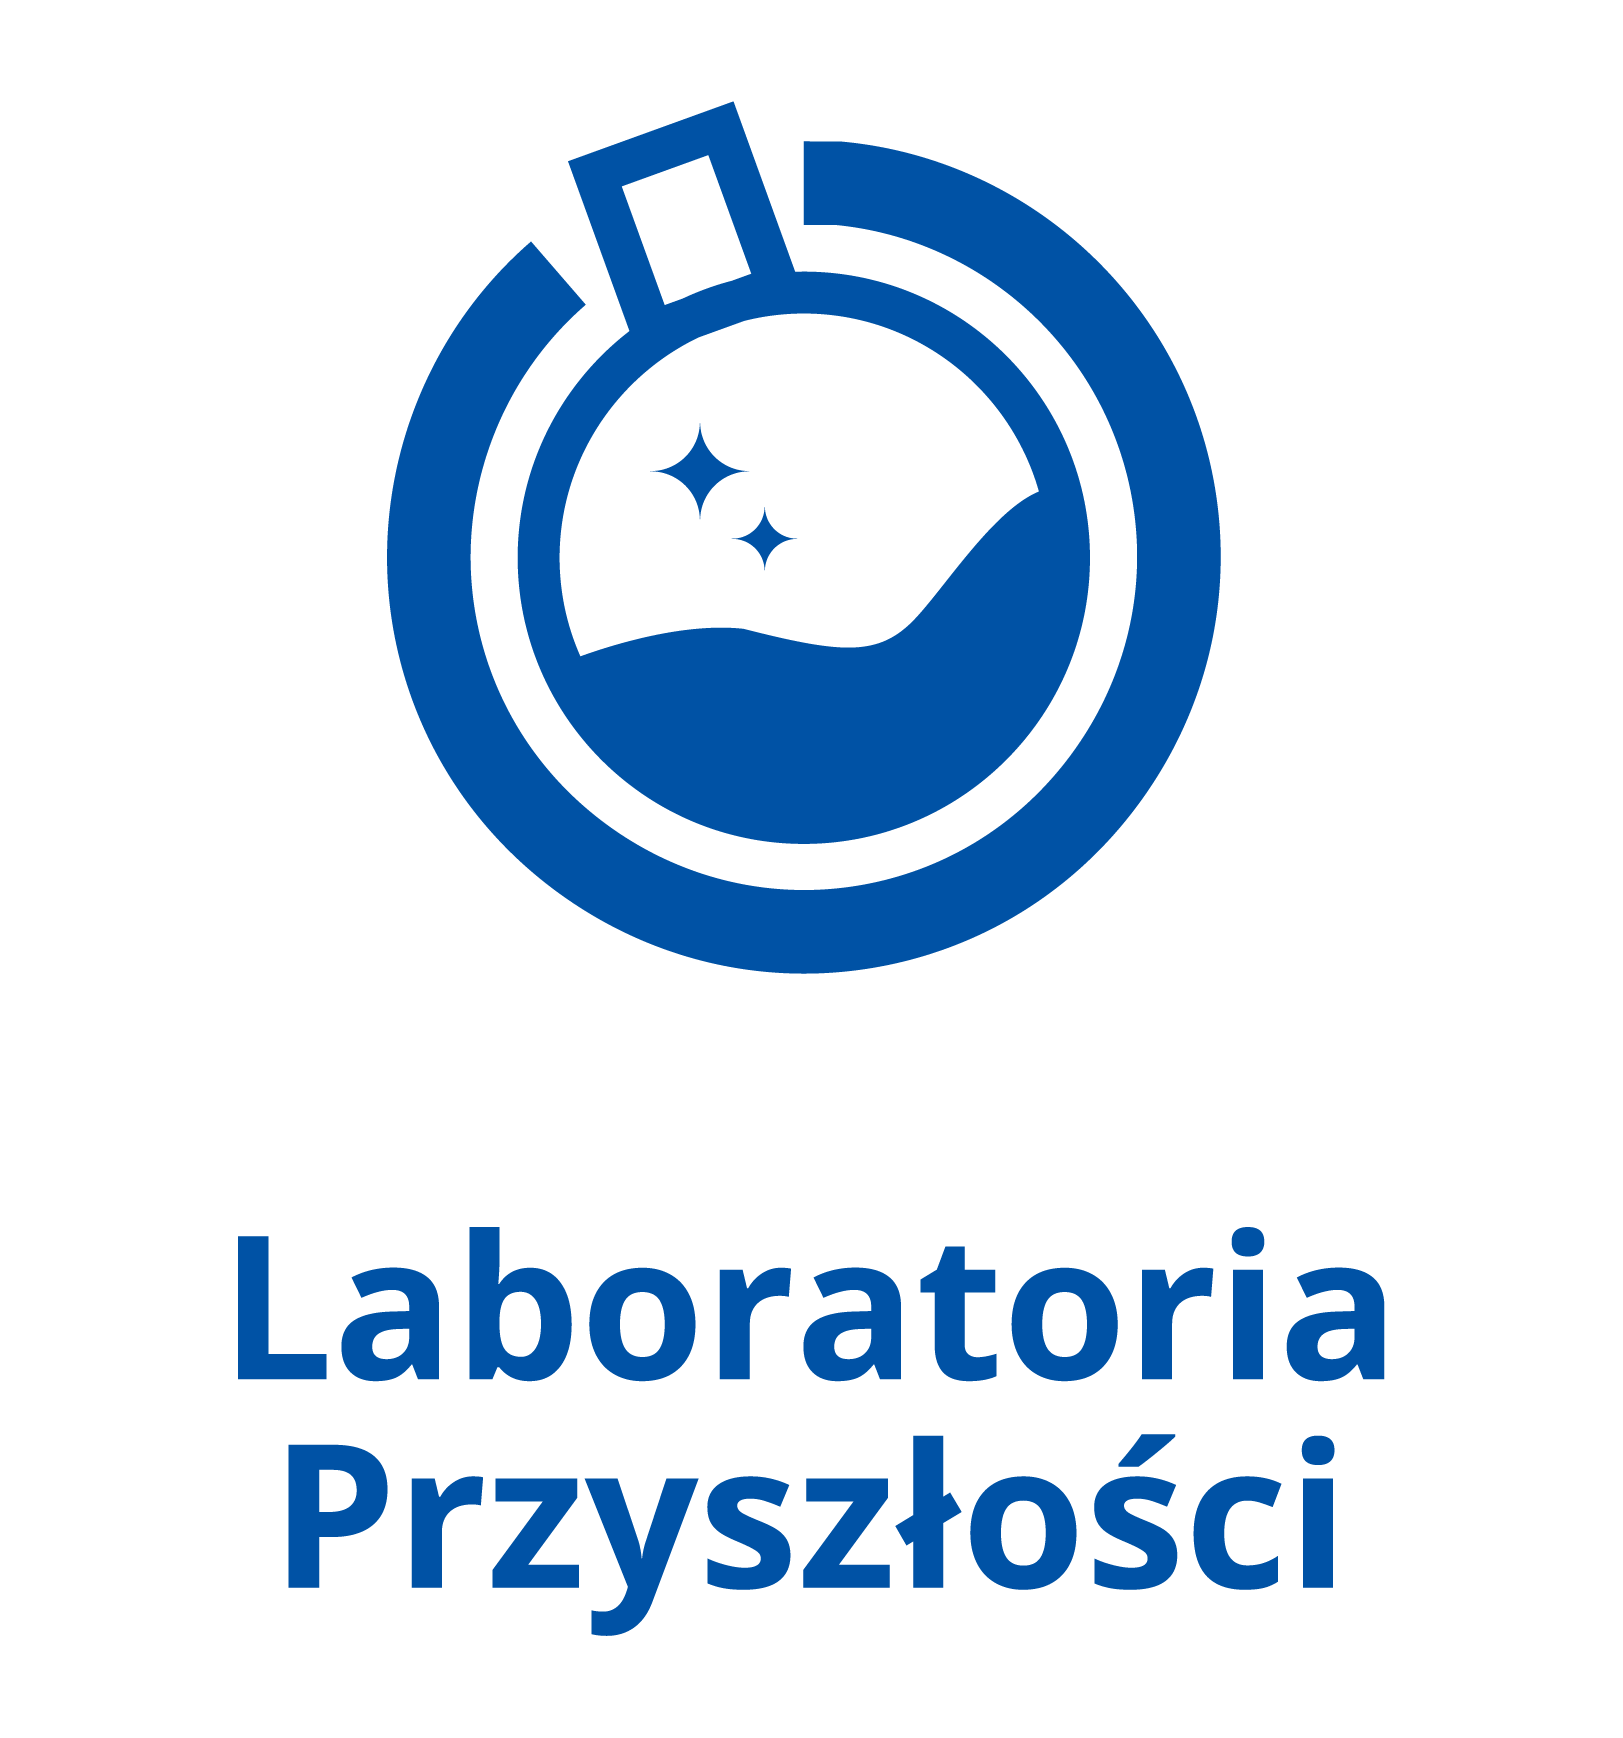 Laboratoria przyszlości logo